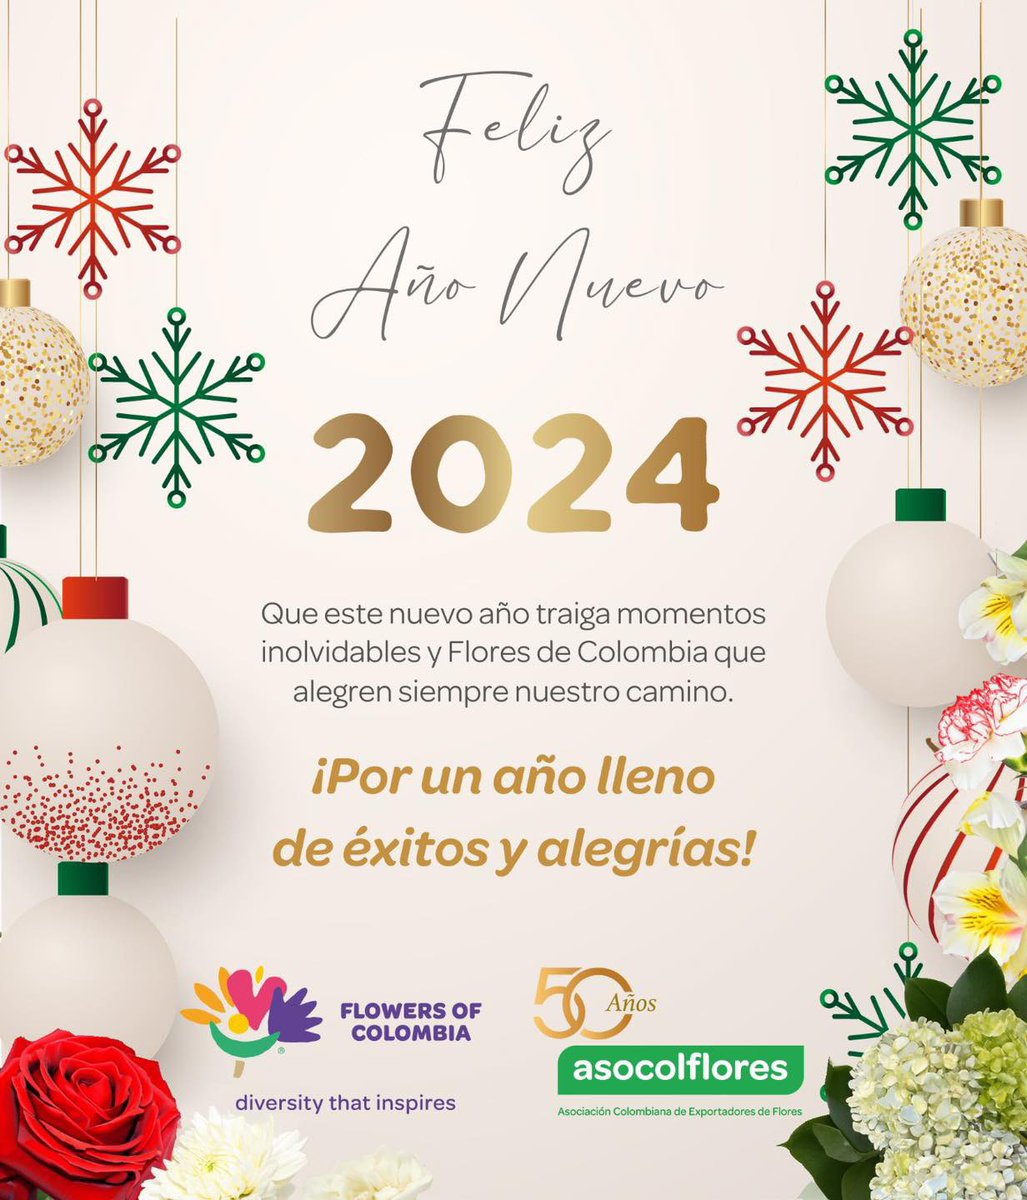 Que en este nuevo año florezca la paz, la felicidad y los buenos momentos. Por un #2024 lleno de éxitos y muchas Flores de Colombia! ✨💐 #Asocolflores #FlowersOfColombia #DiversityThatInspires